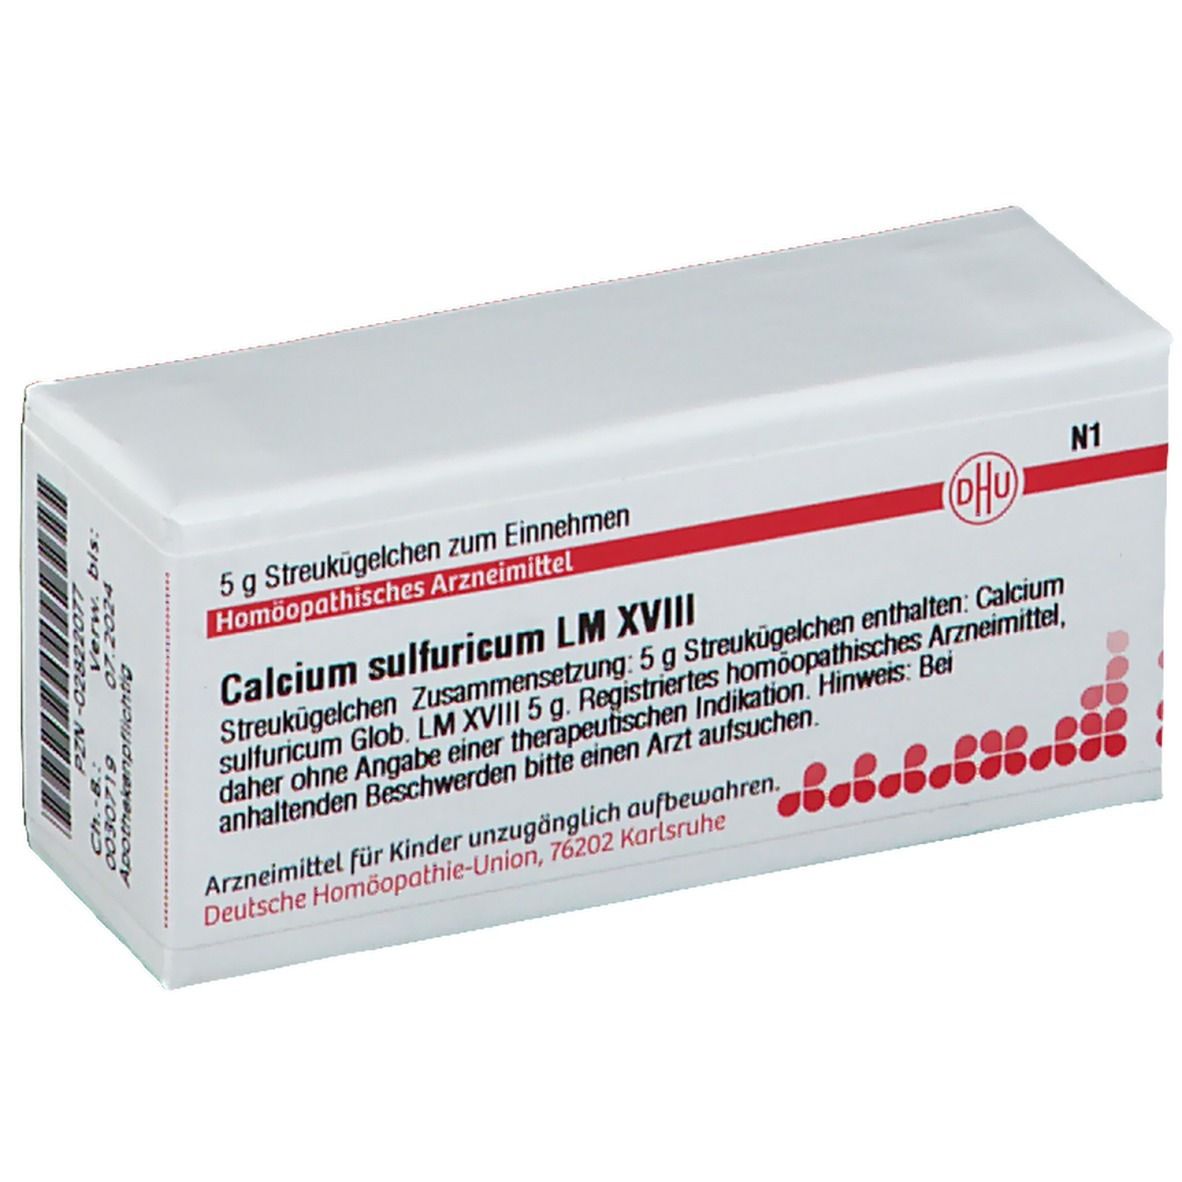 DHU Calcium Sulfuricum LM XVIII